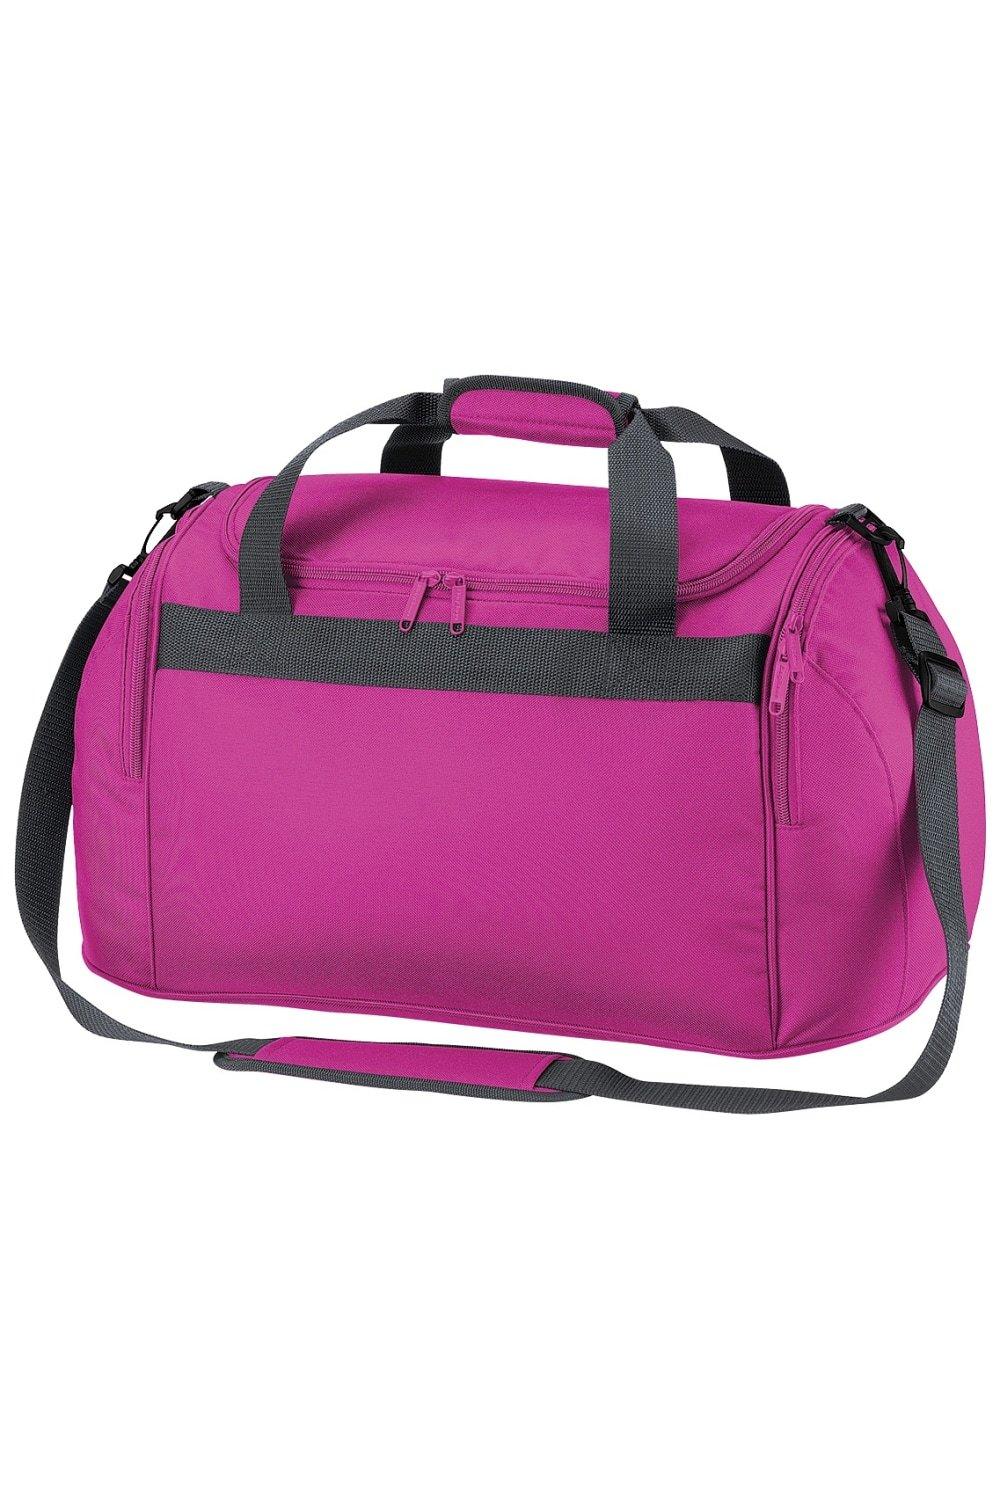 Дорожная сумка для фристайла/спортивная сумка (26 литров) (2 шт. в упаковке) Bagbase, розовый цена и фото